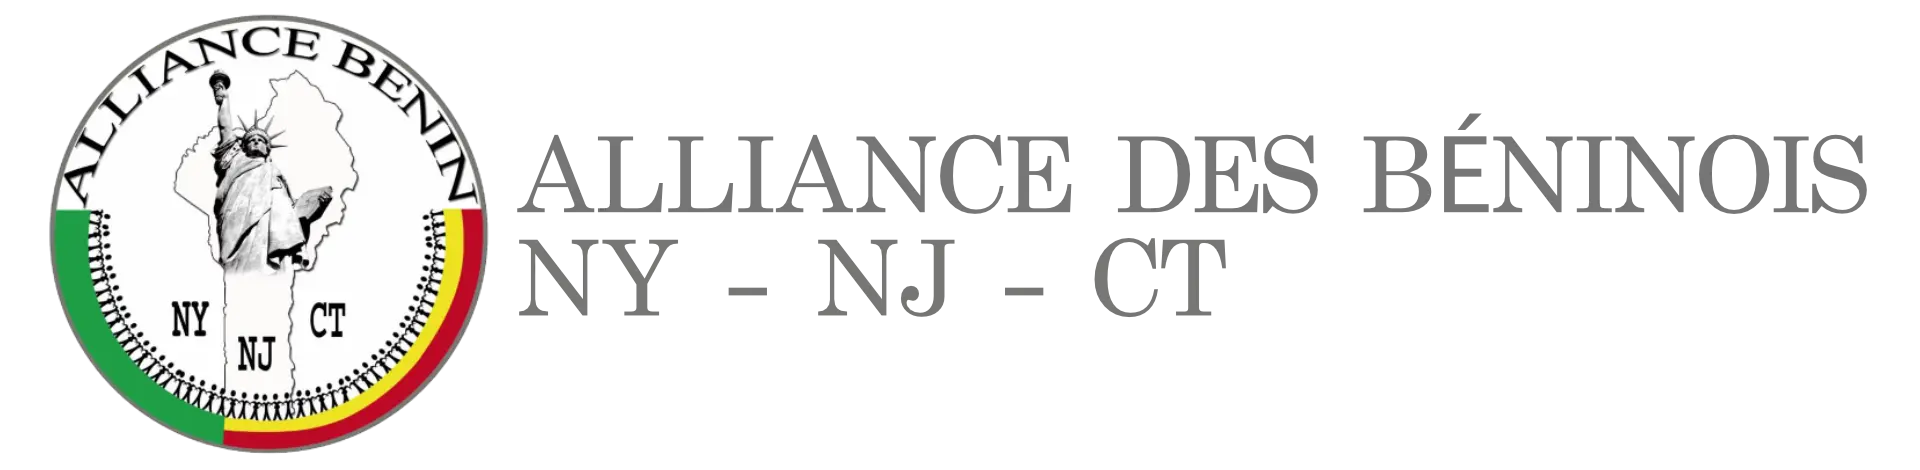 Alliance des Béninois de NY,NJ et CT